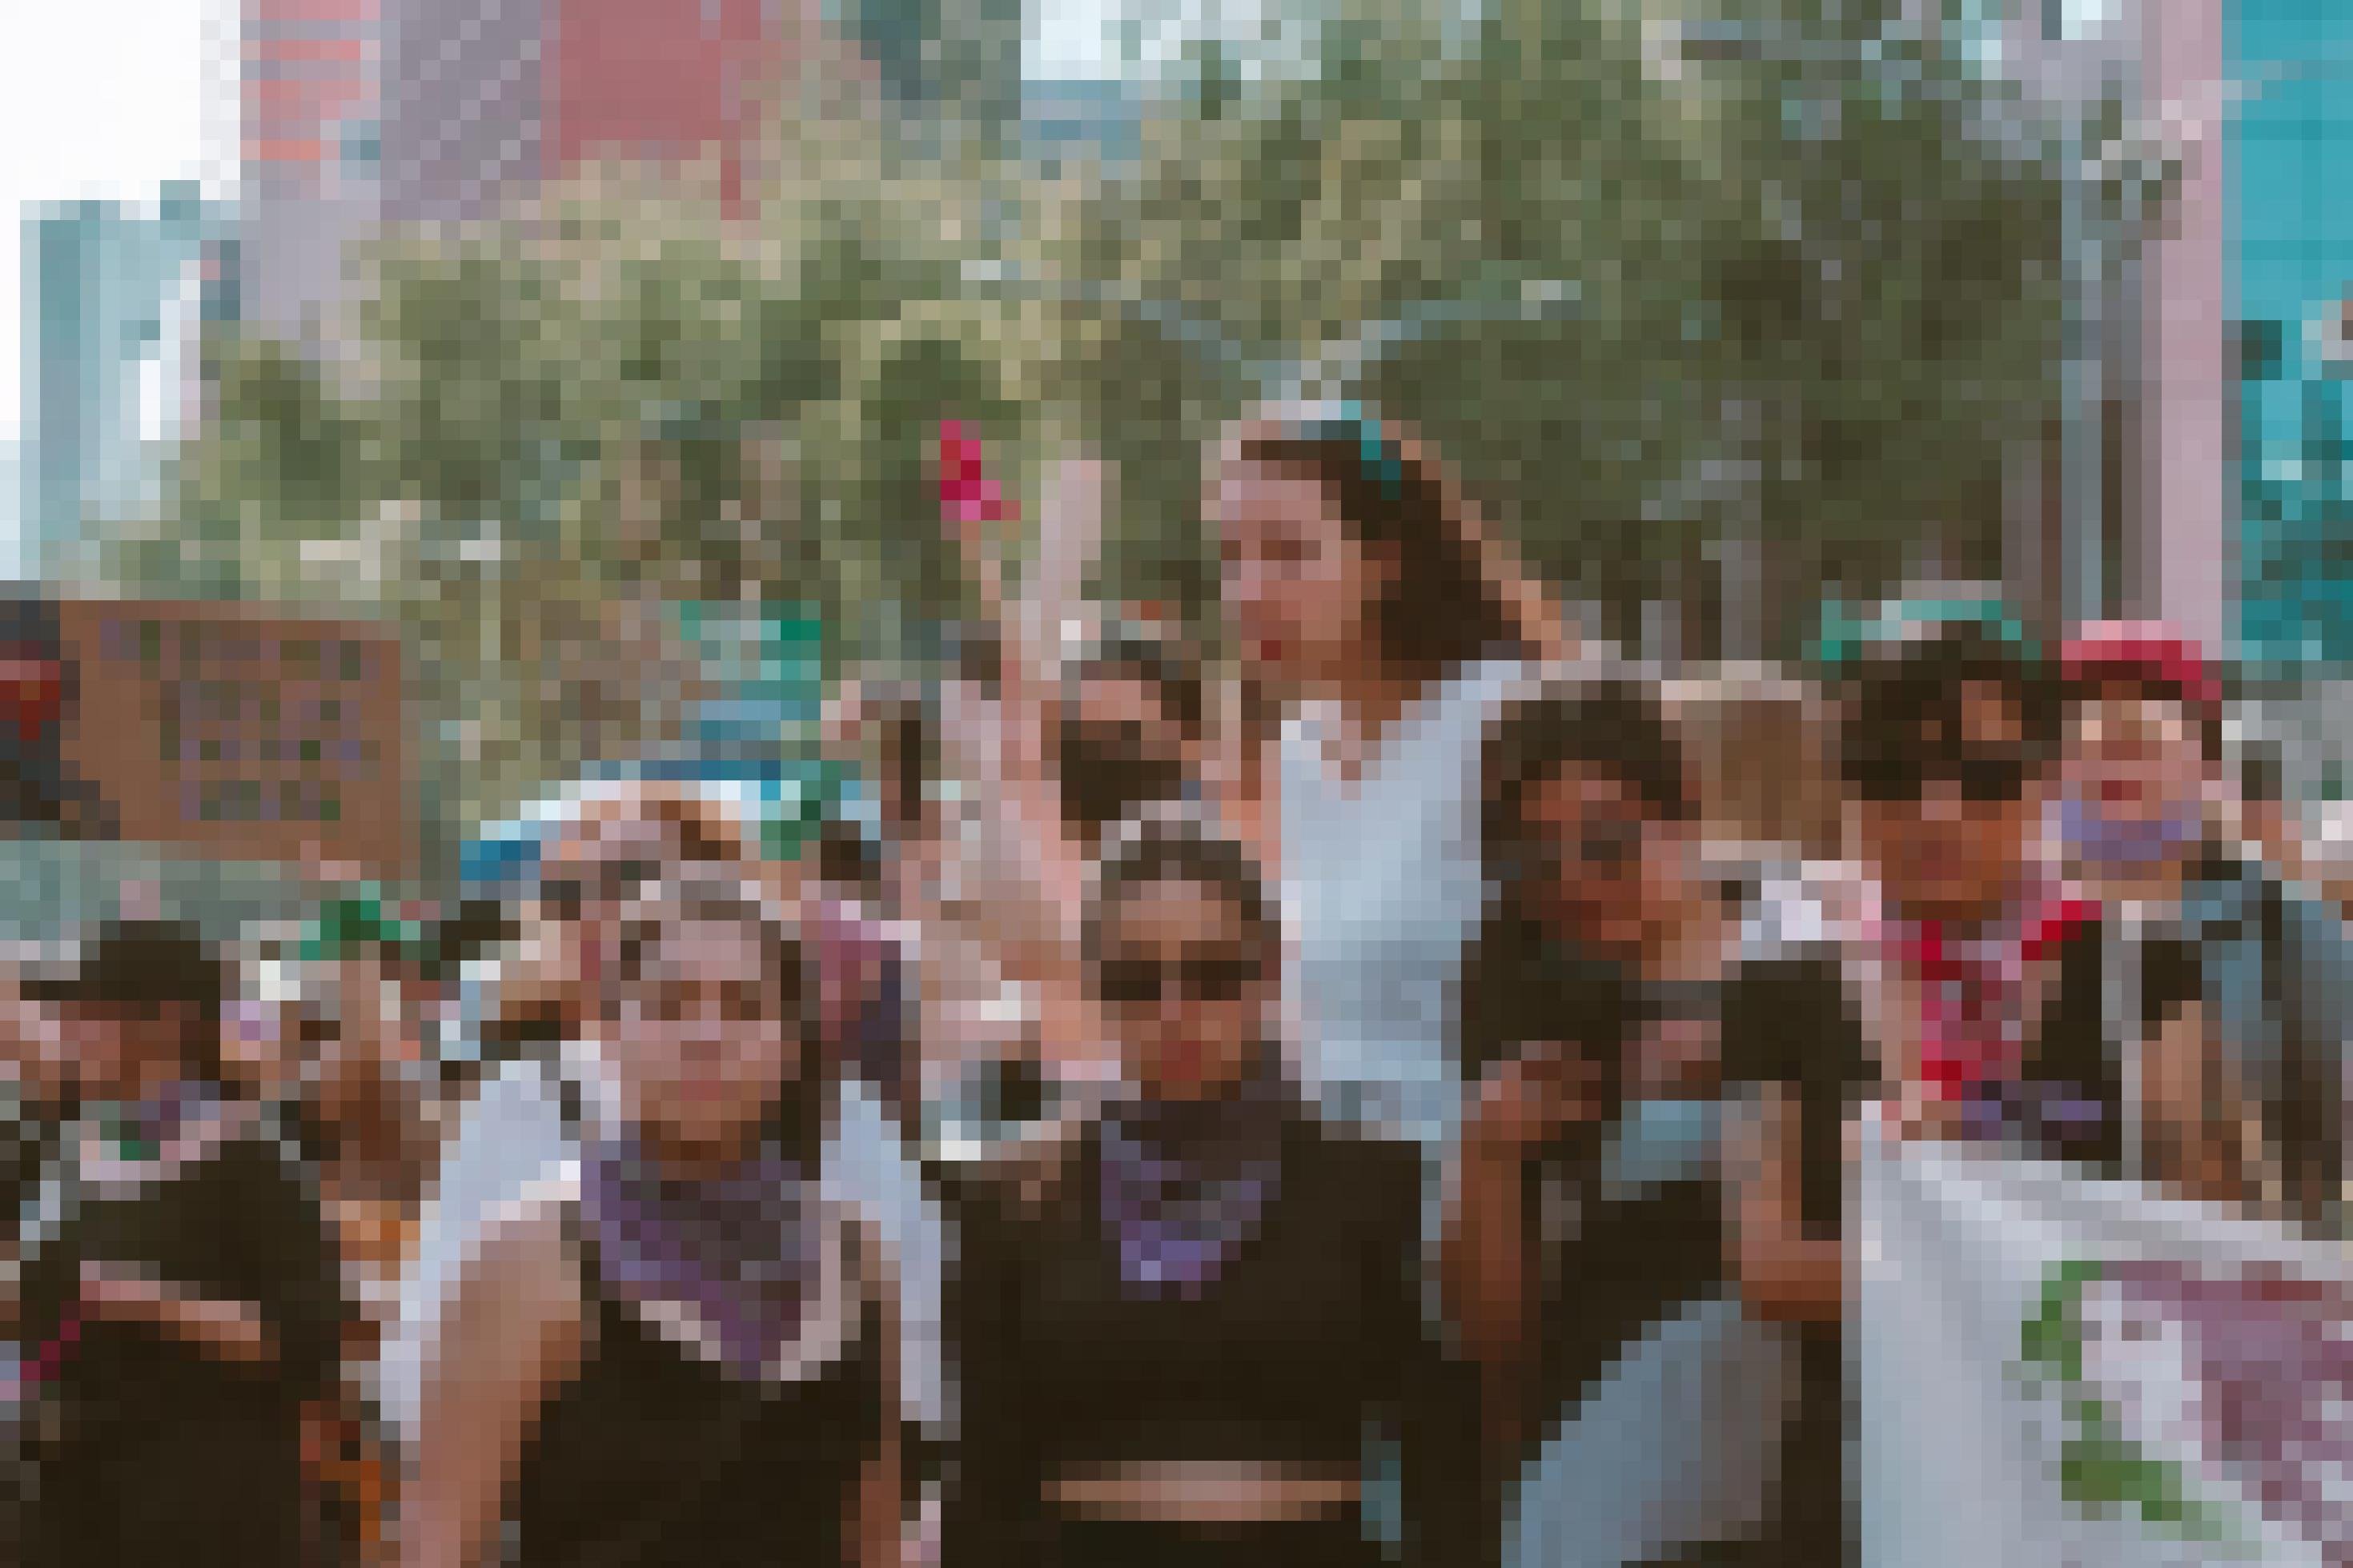 Frauen in schwarz-lilafarbener Kleidung mit Transparenten auf den Straßen von Mexiko-Stadt.